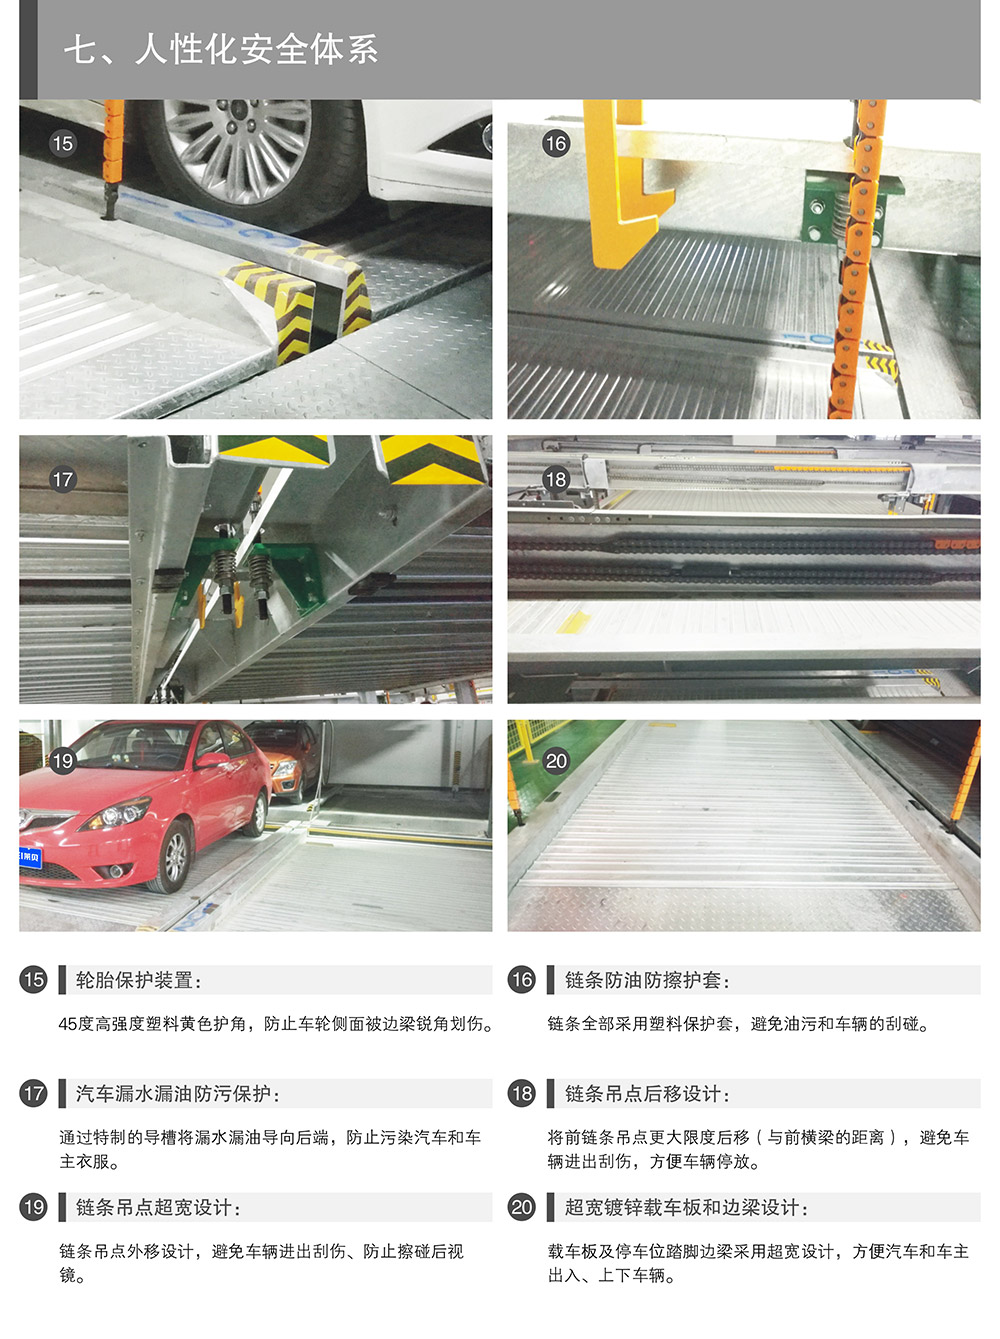 重庆四至六层PSH4-6升降横移式立体停车设备人性化安全体系.jpg